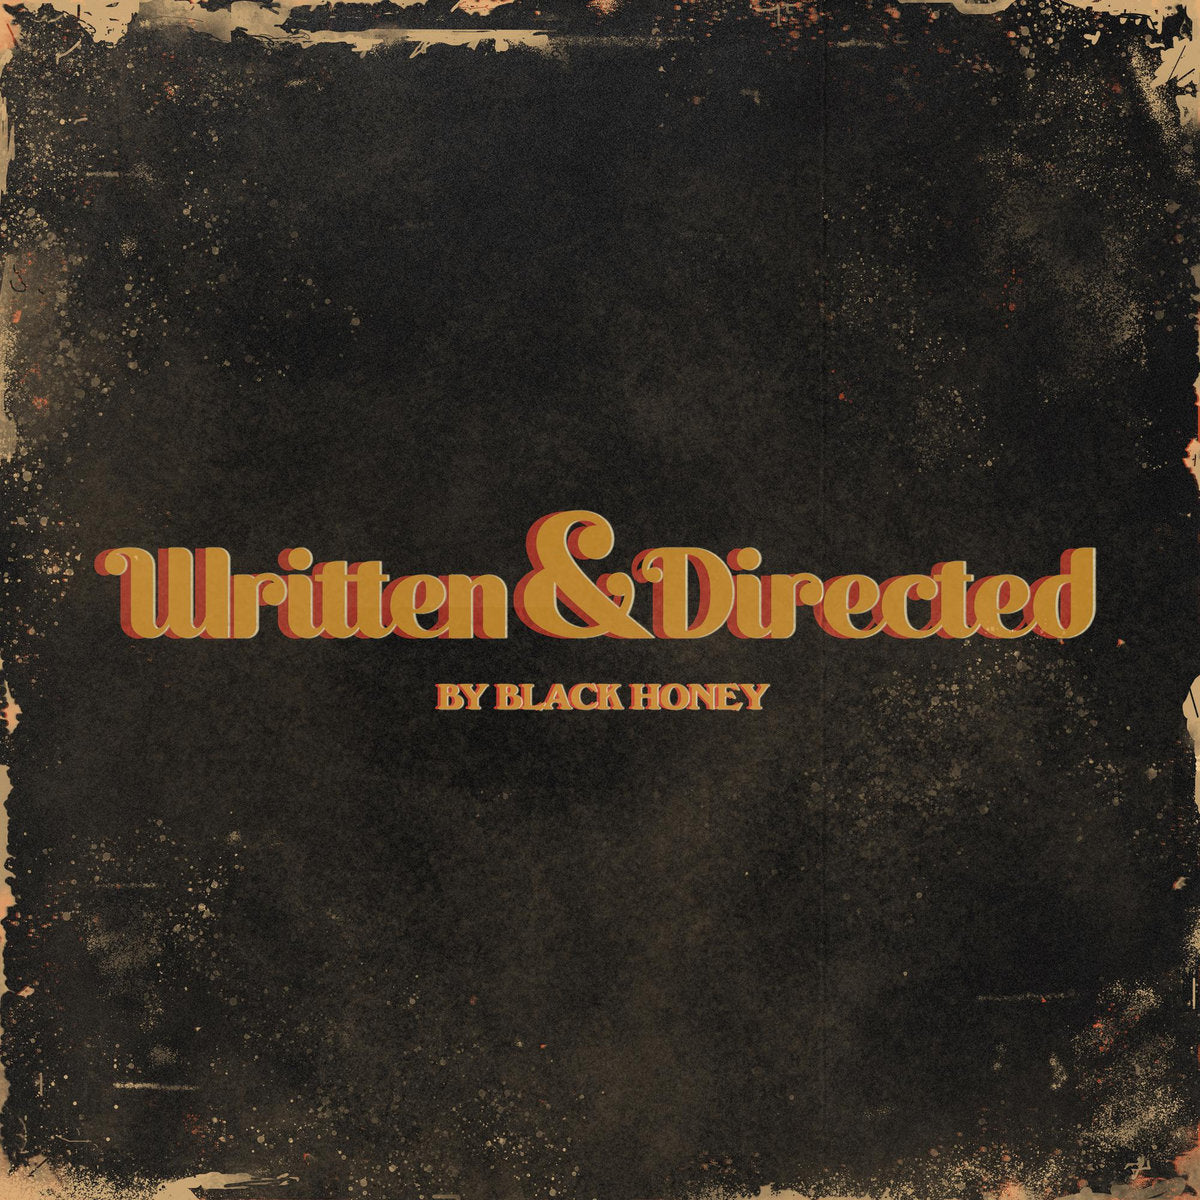 BLACK HONEY - Written & Directed - LP - Gold Vinyl